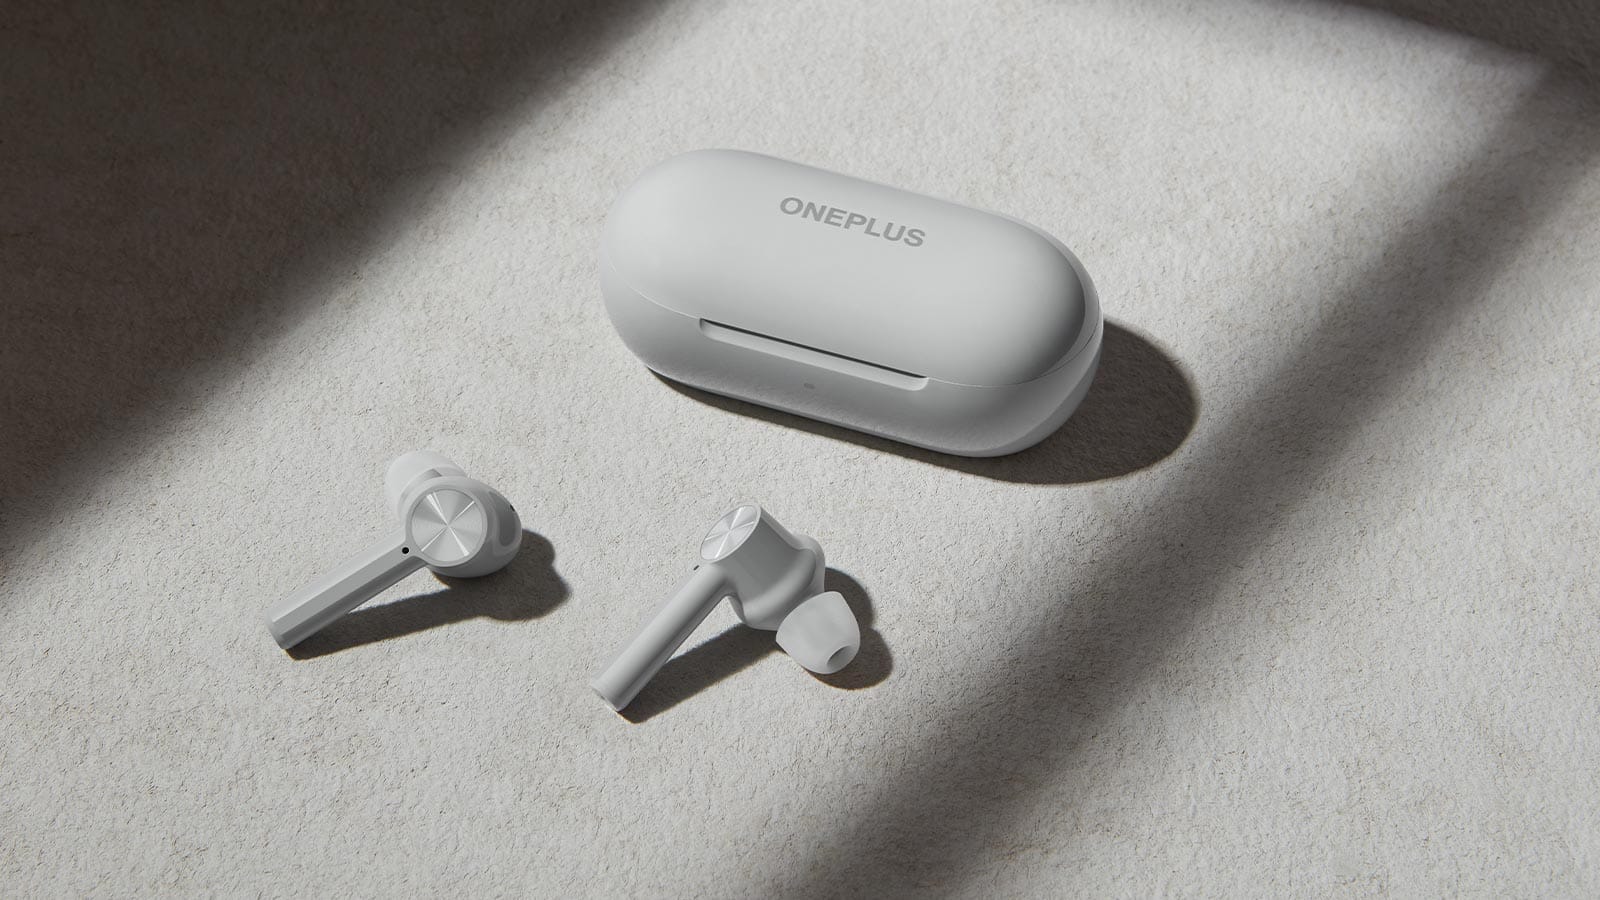 OnePlus Buds Z true wireless earbuds offer powerful bass